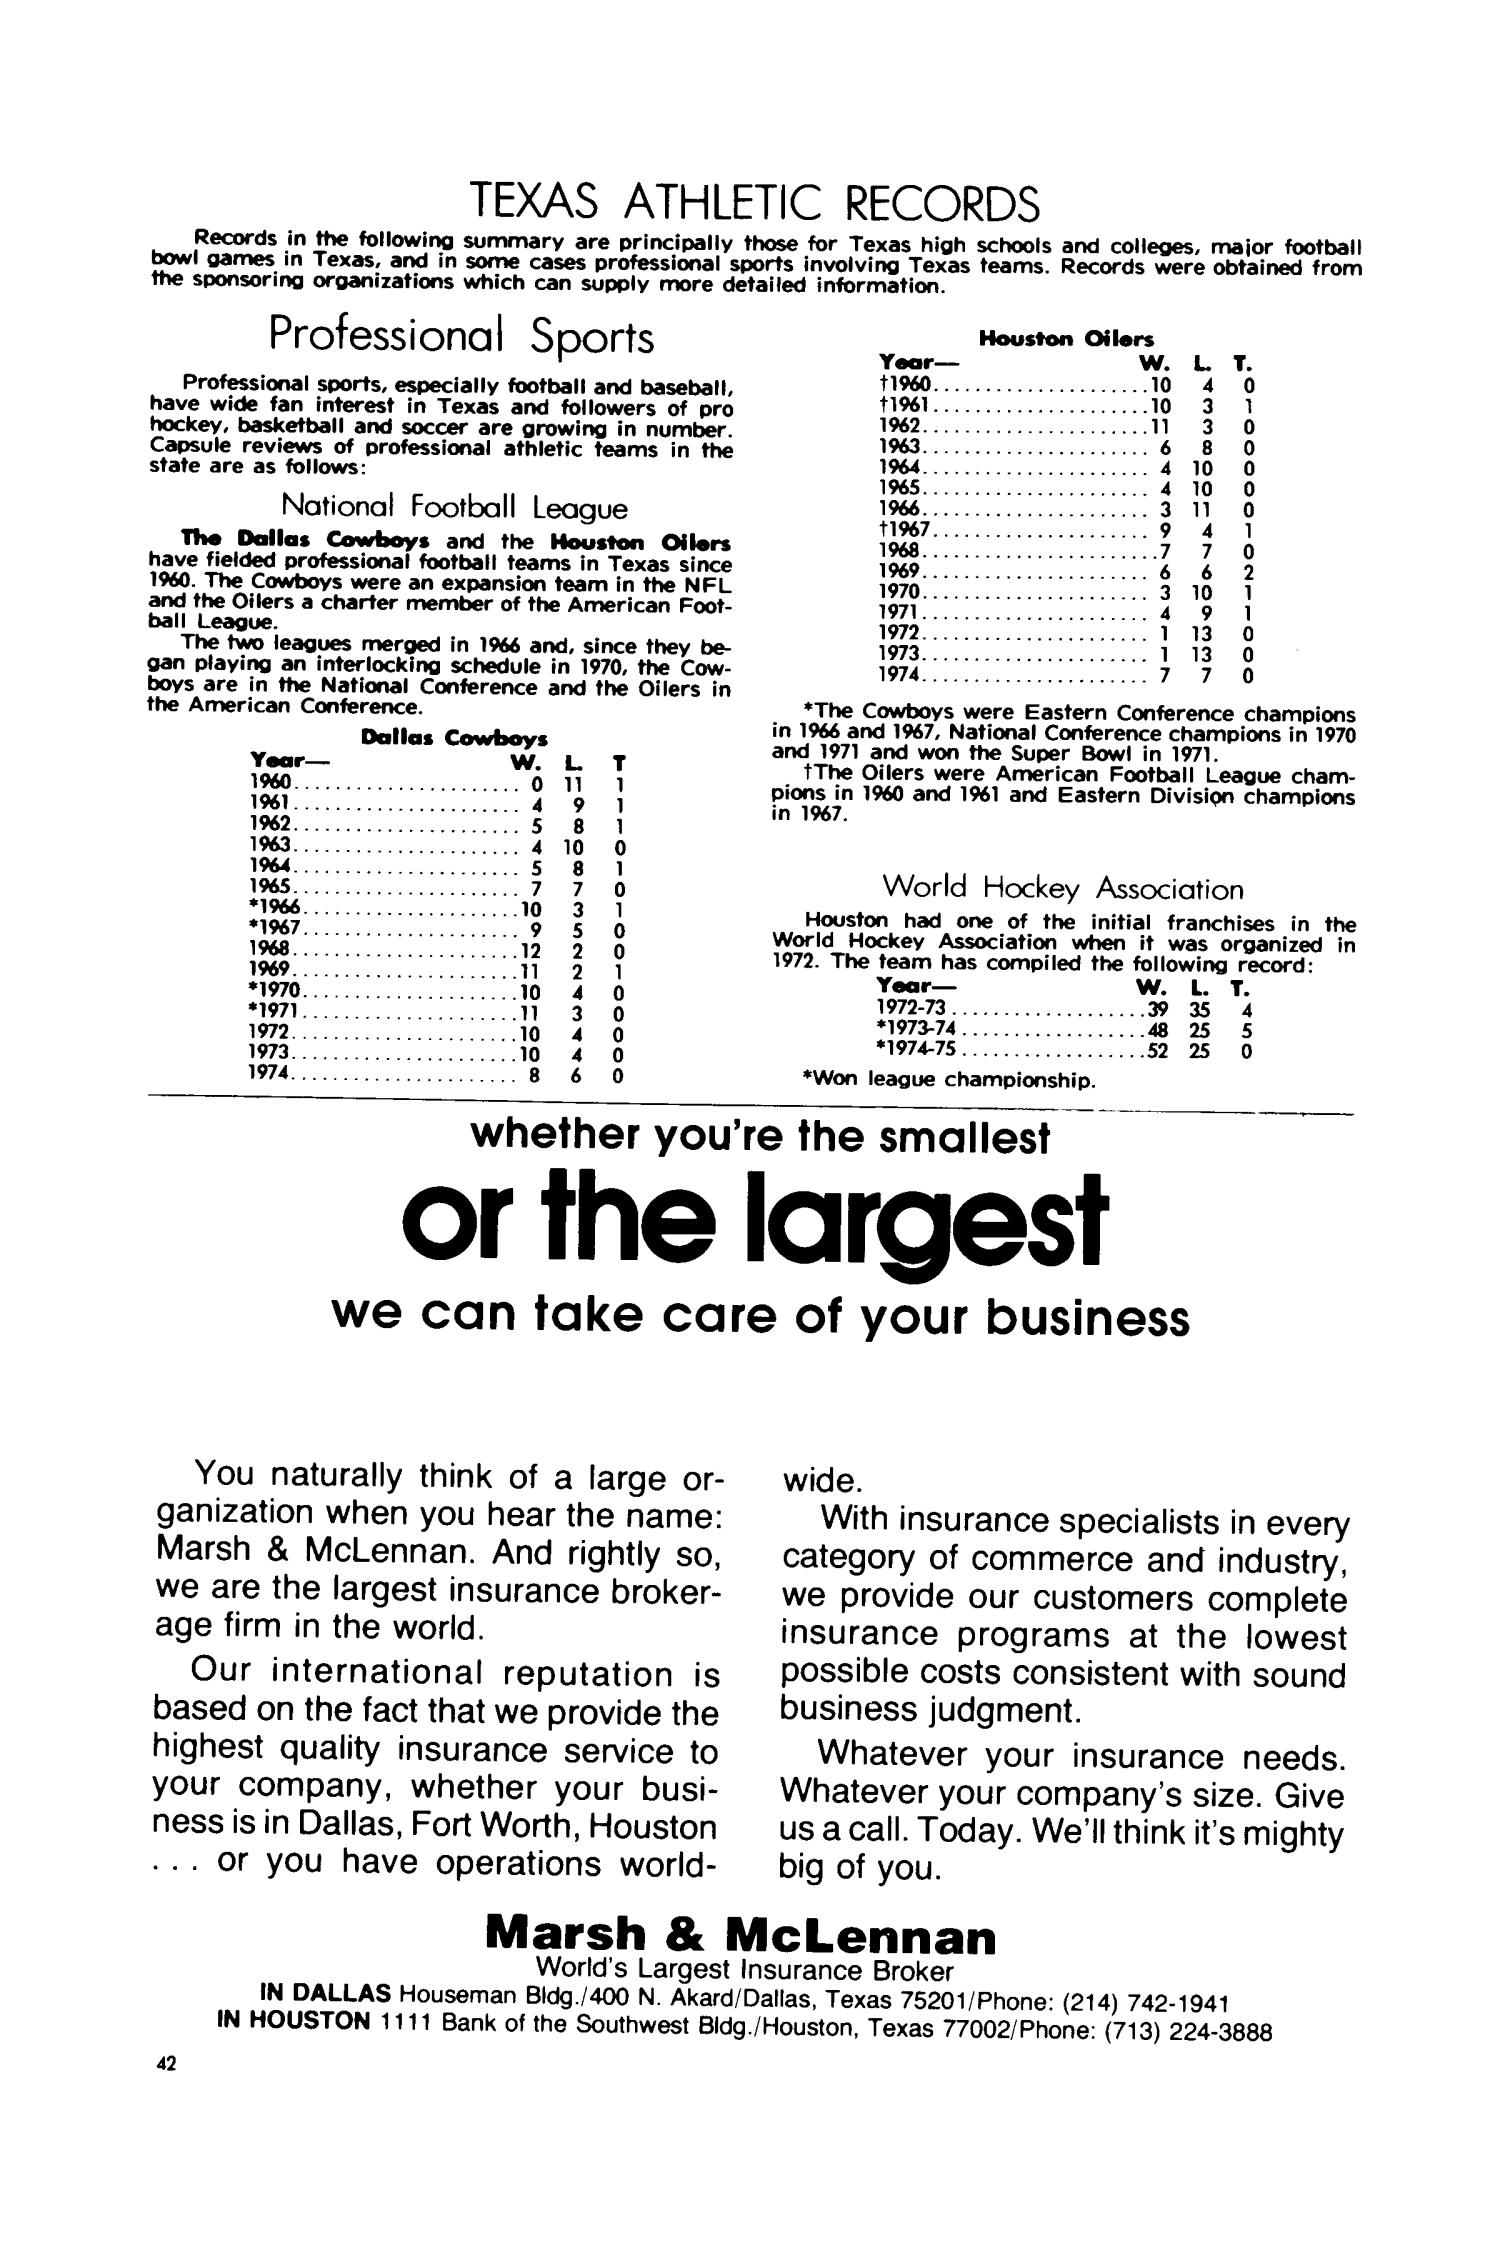 Texas Almanac, 1976-1977
                                                
                                                    42
                                                